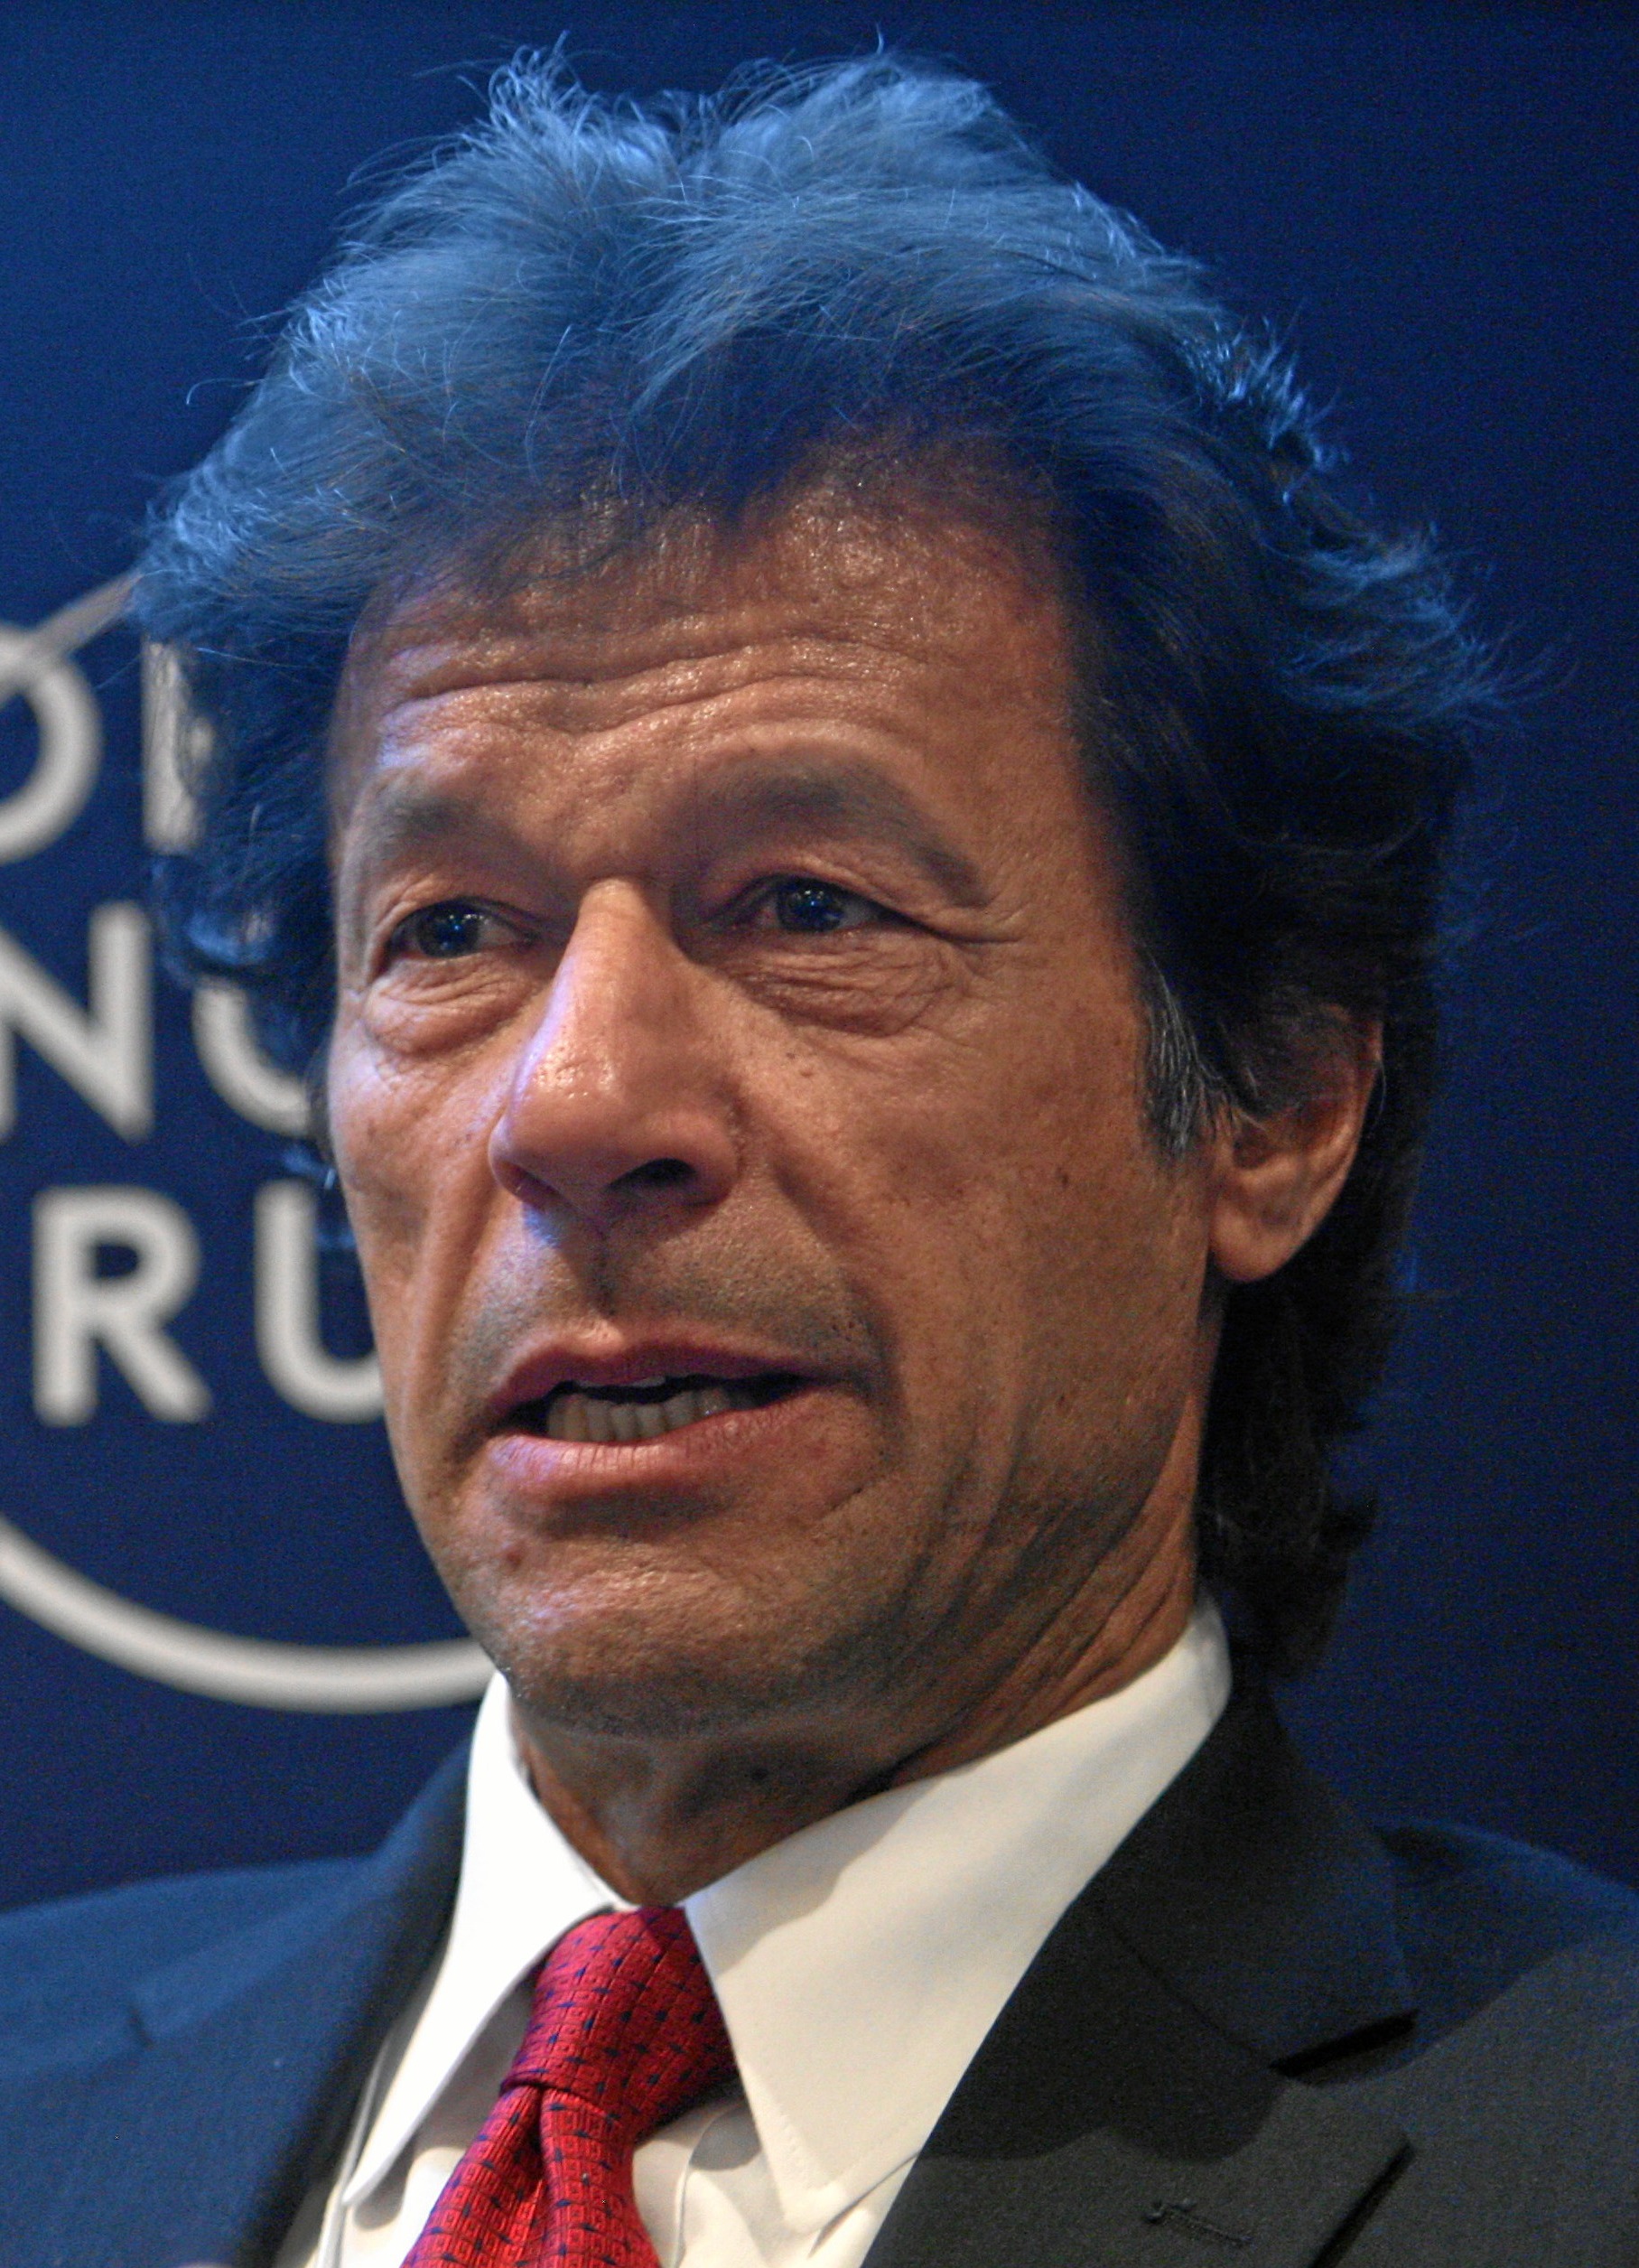 5 Fakta mengenai Imran Khan, Perdana Menteri Pakistan yang baru